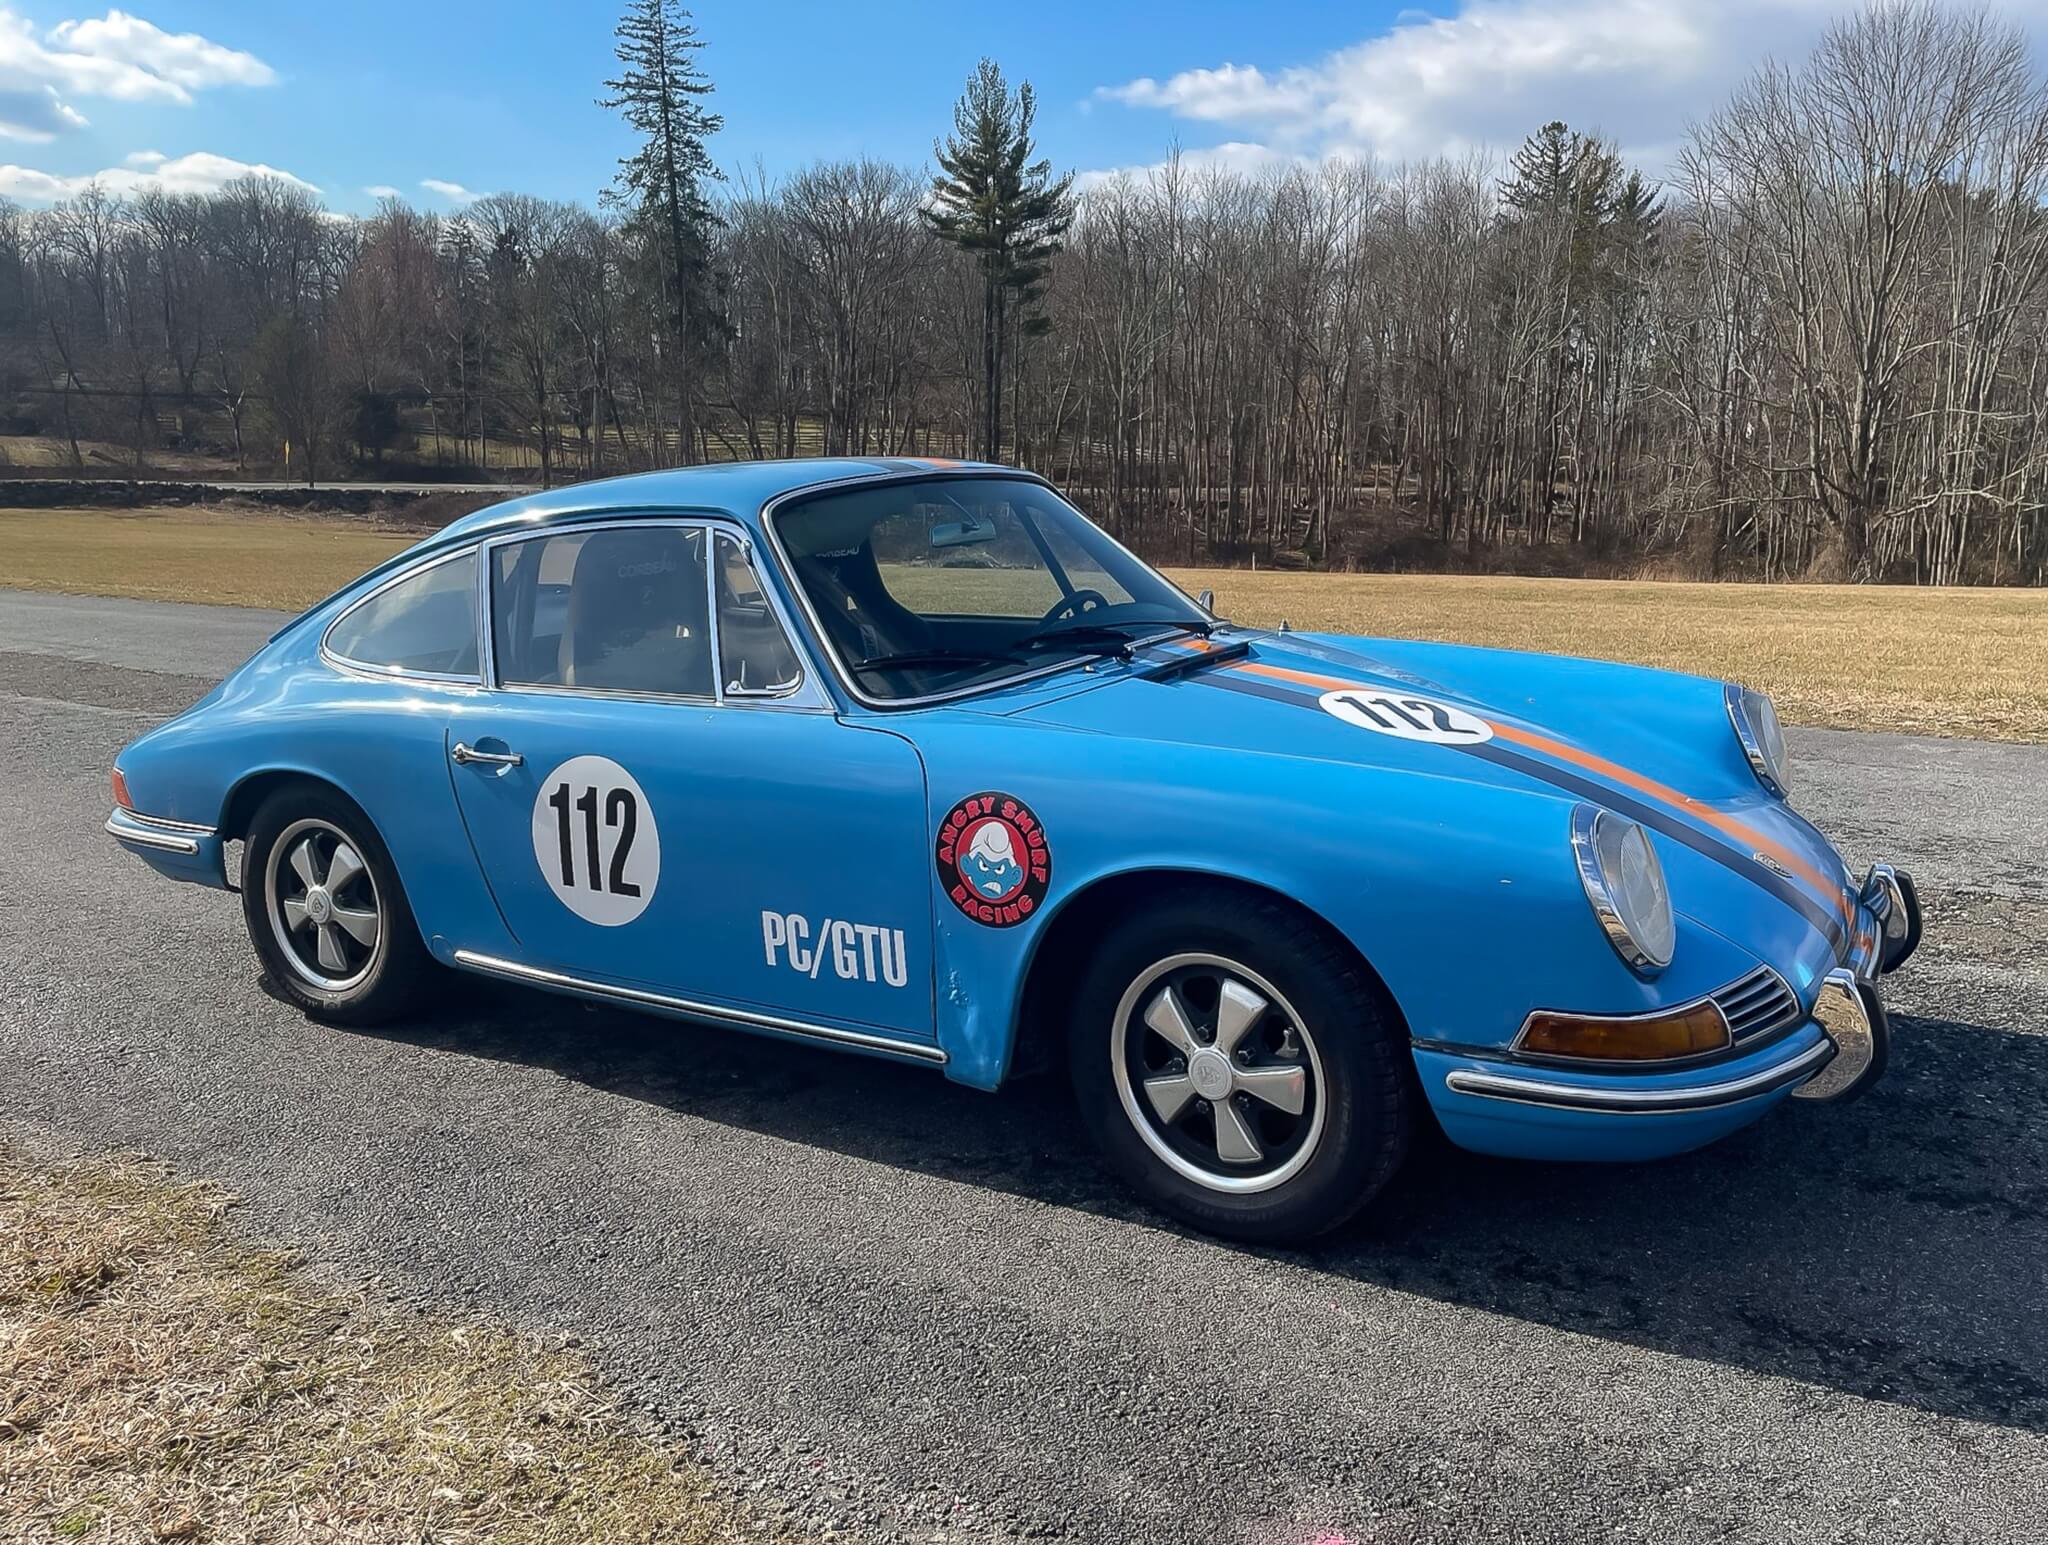 No Reserve 1966 Porsche 912 Coupe